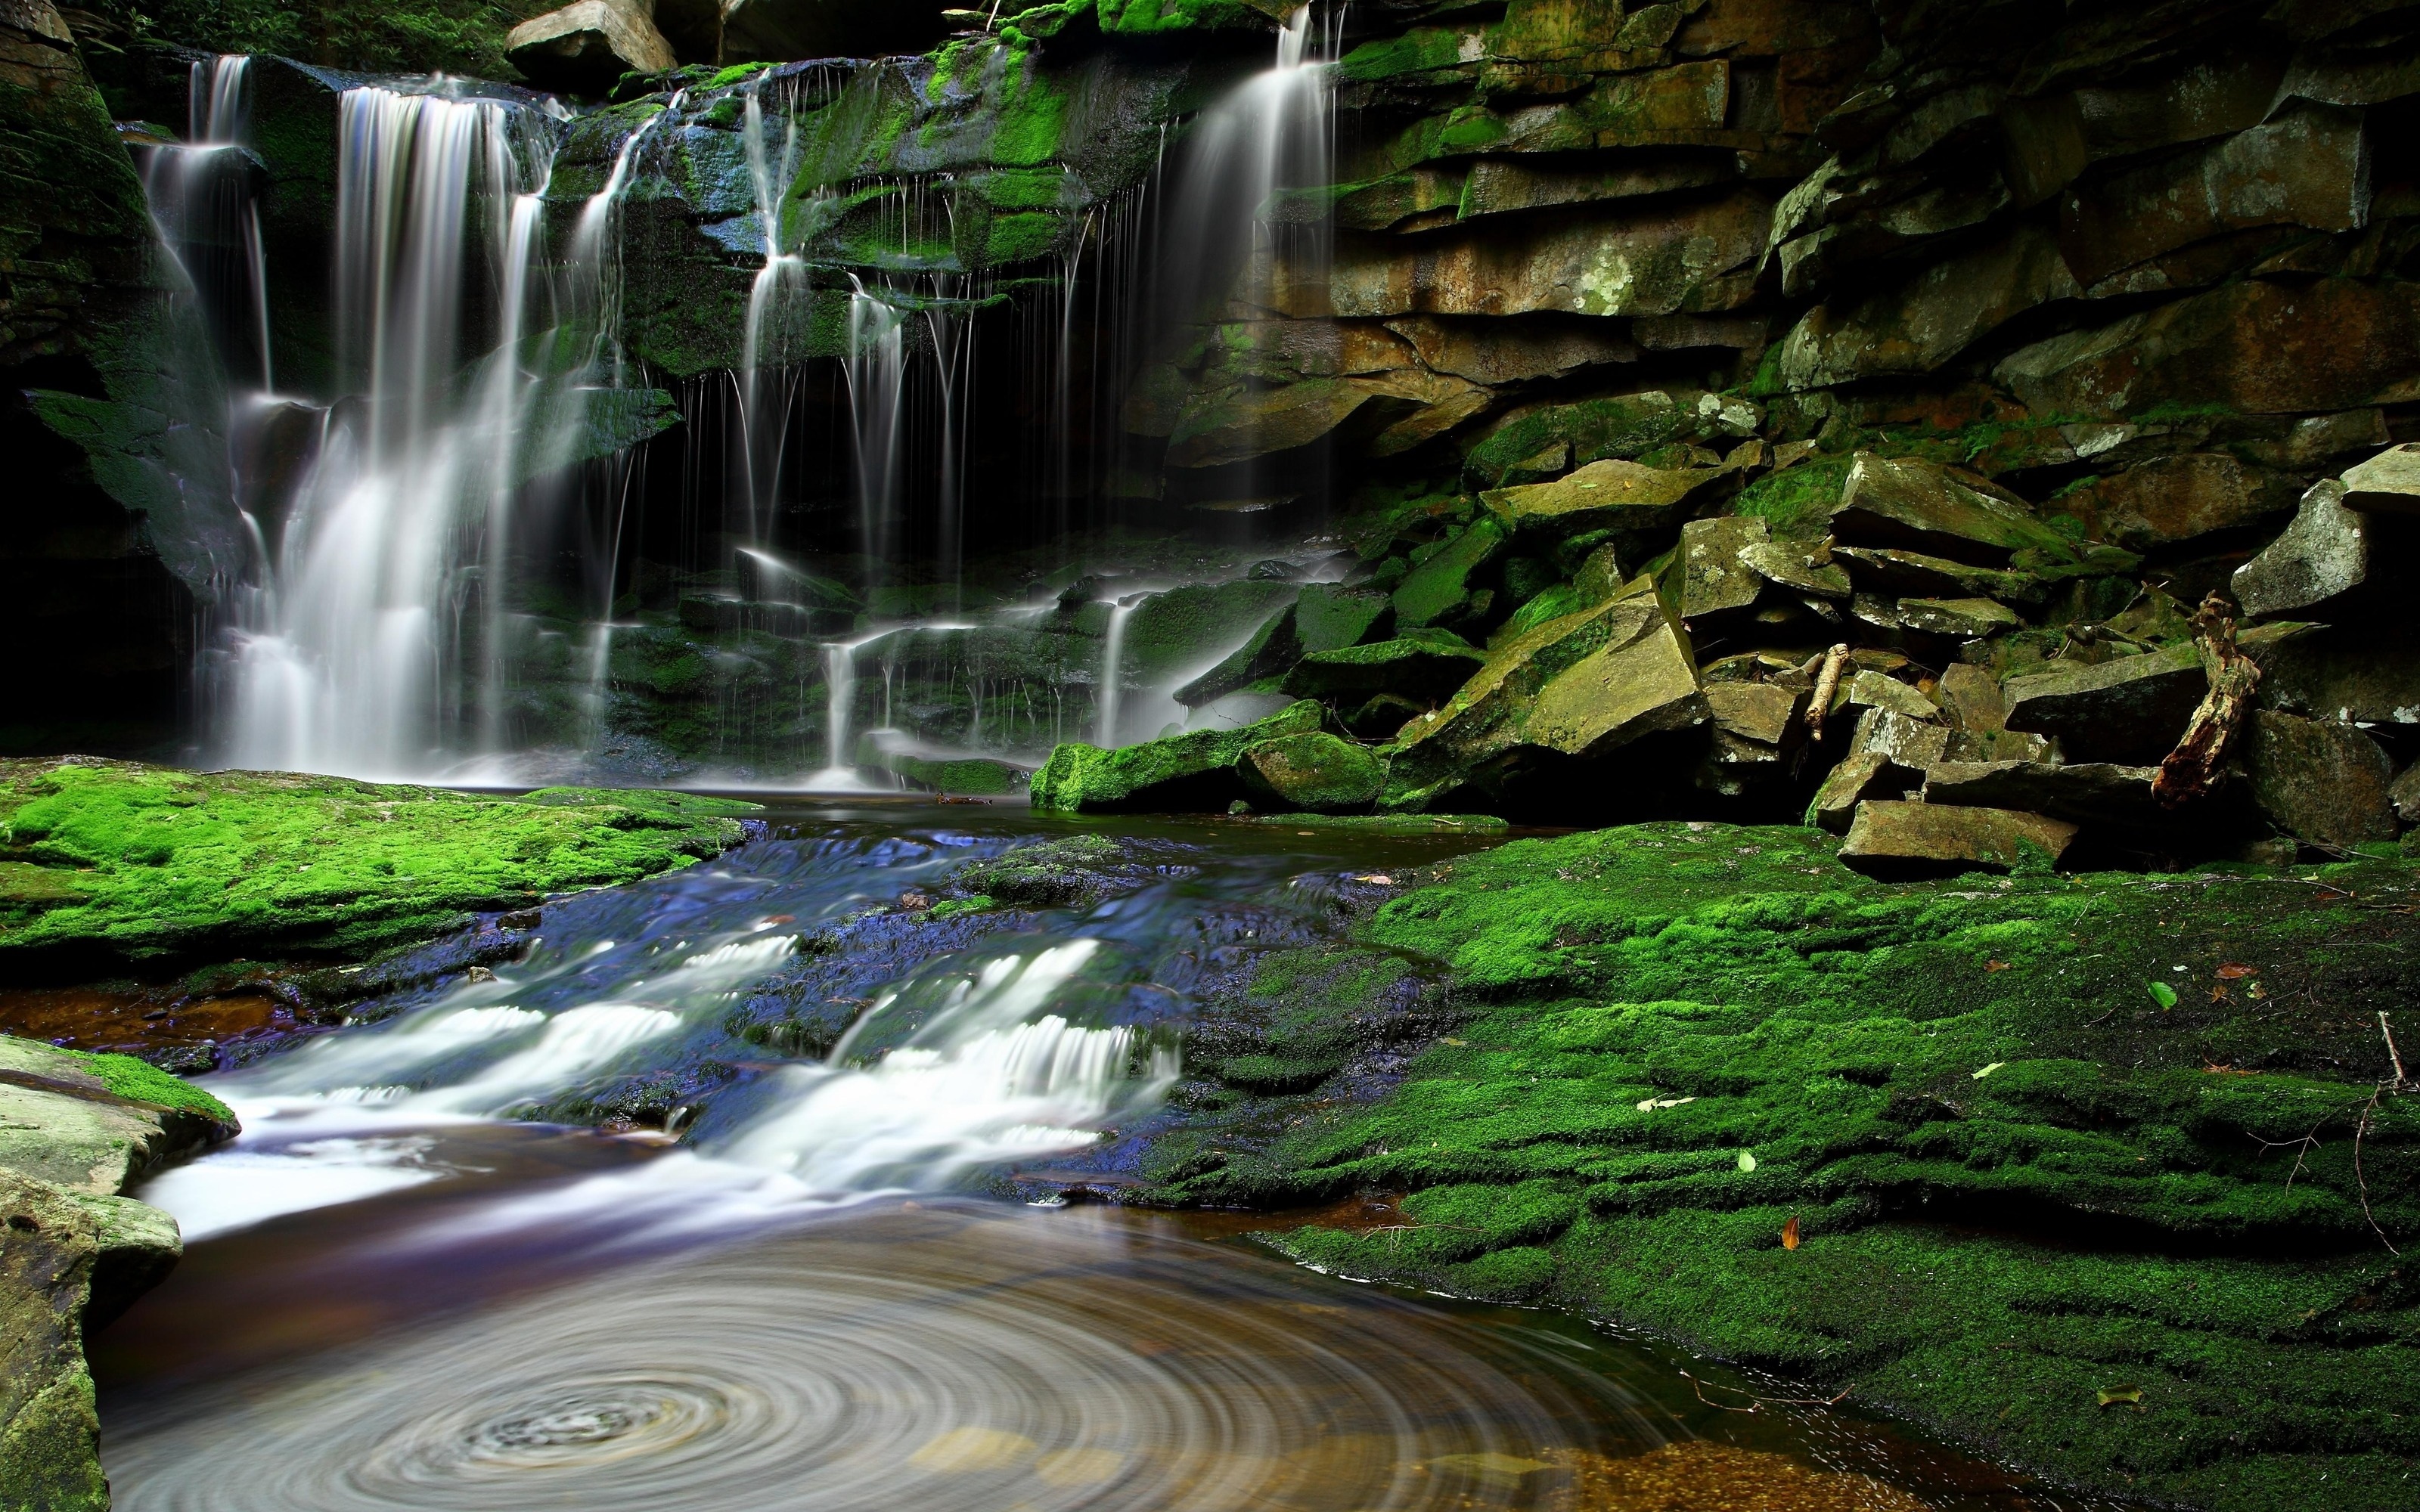 Обои на телефон живой водопад. Красивые водопады. Водопад зелень. Живая природа водопады. Обои водопад.